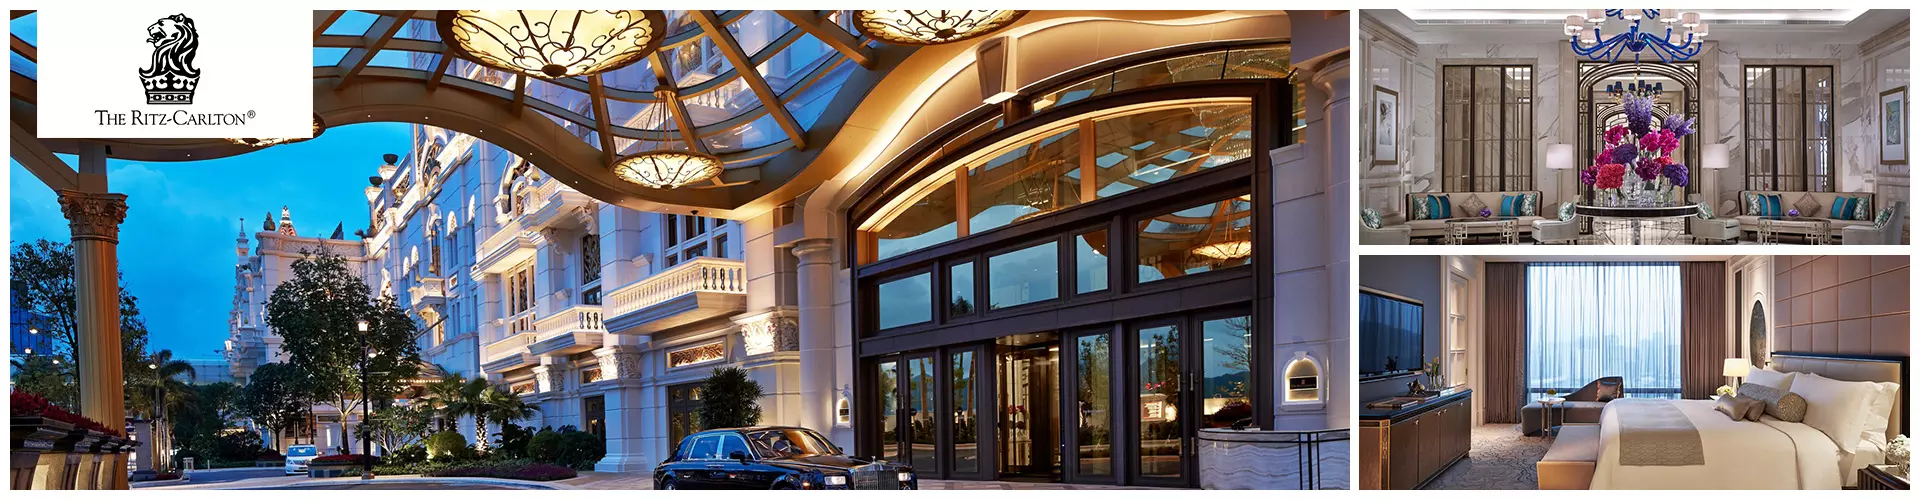 澳門麗思卡爾頓酒店套票-The-Ritz Carlton Macau Package